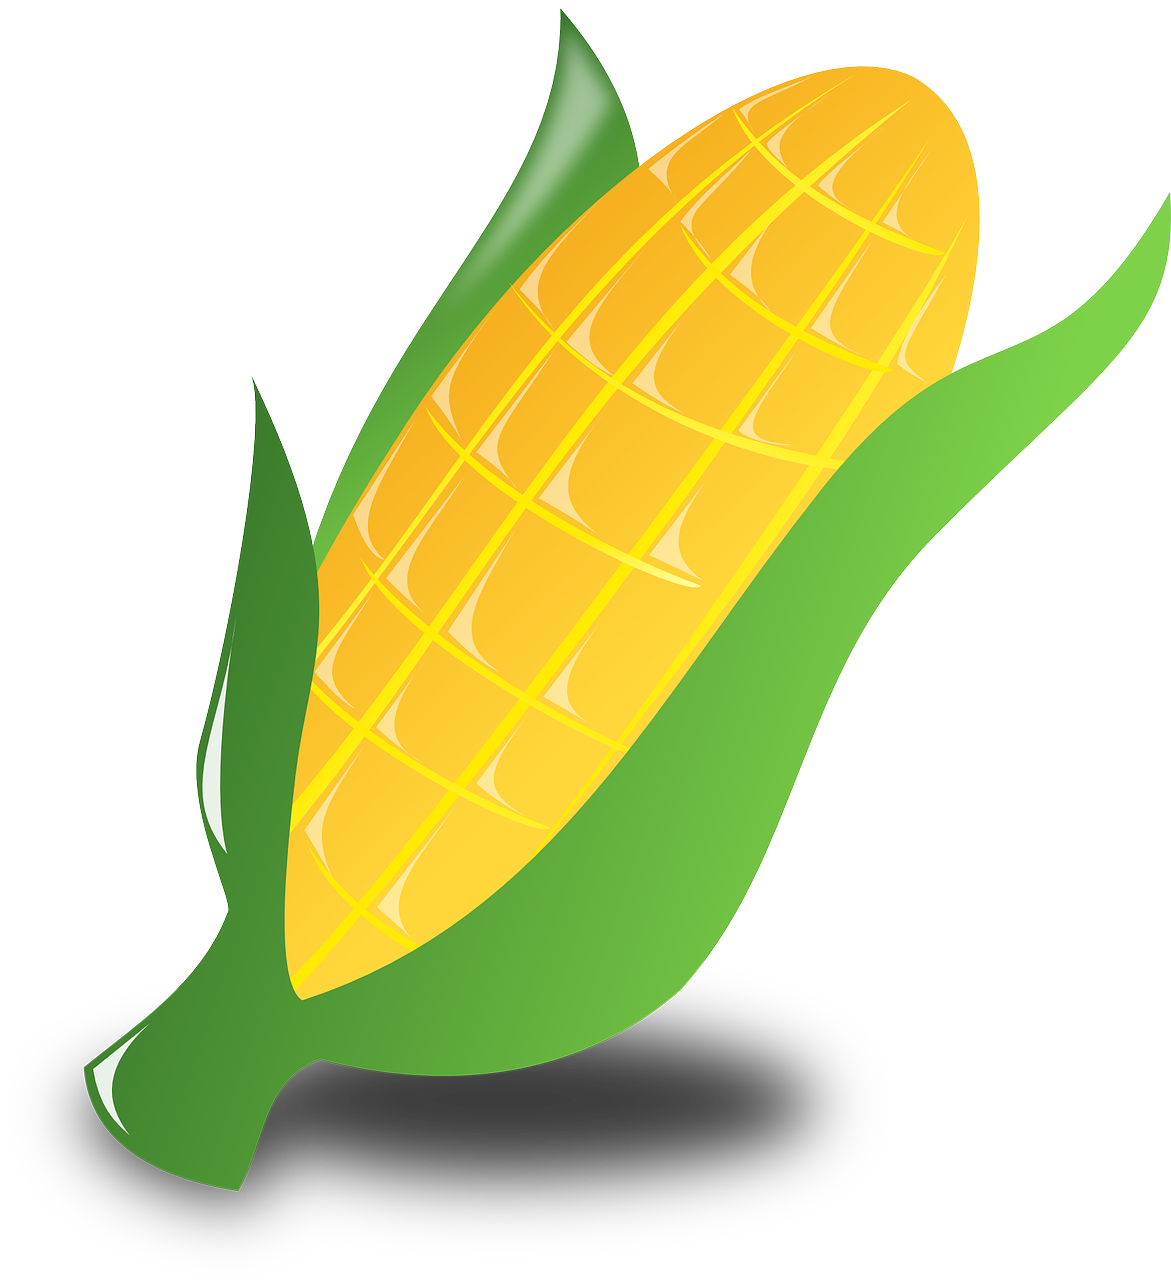 Crops clipart corn cob, Picture #839697 crops clipart corn cob.